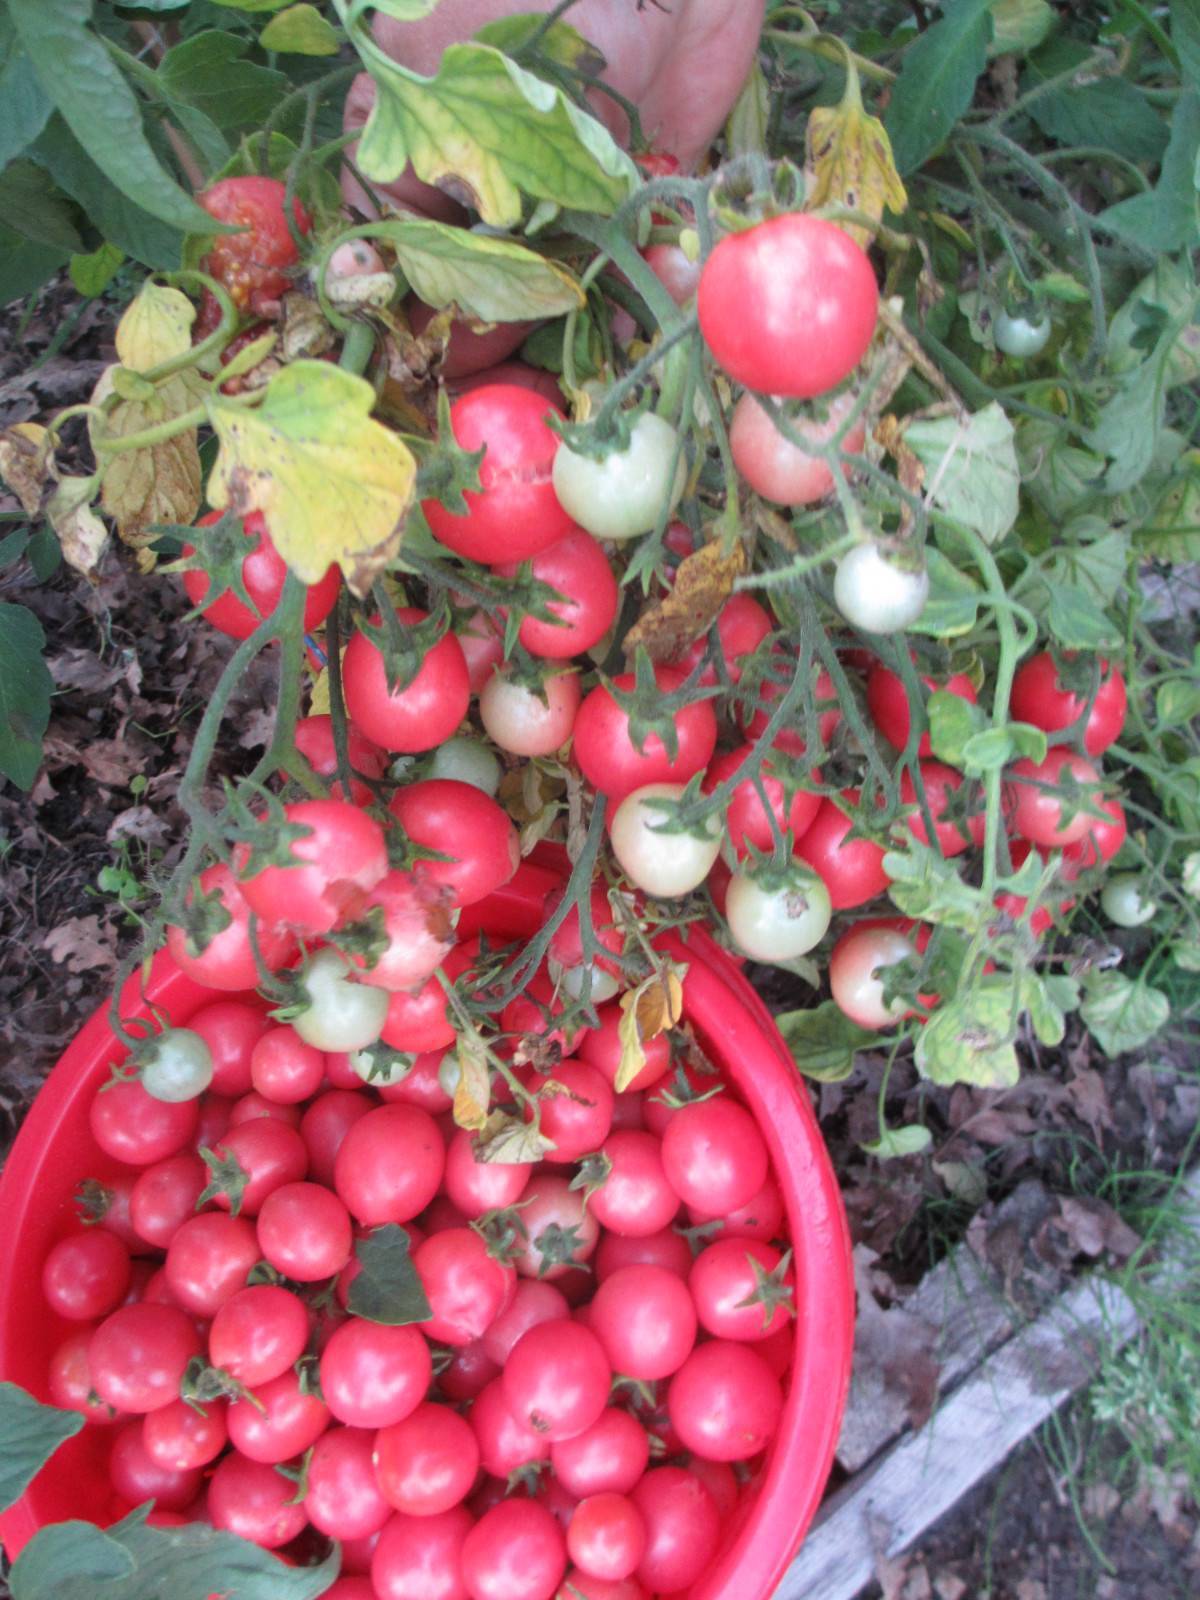 Томат садовая жемчужина: описание и характеристика сорта, отзывы, фото, урожайность | tomatland.ru